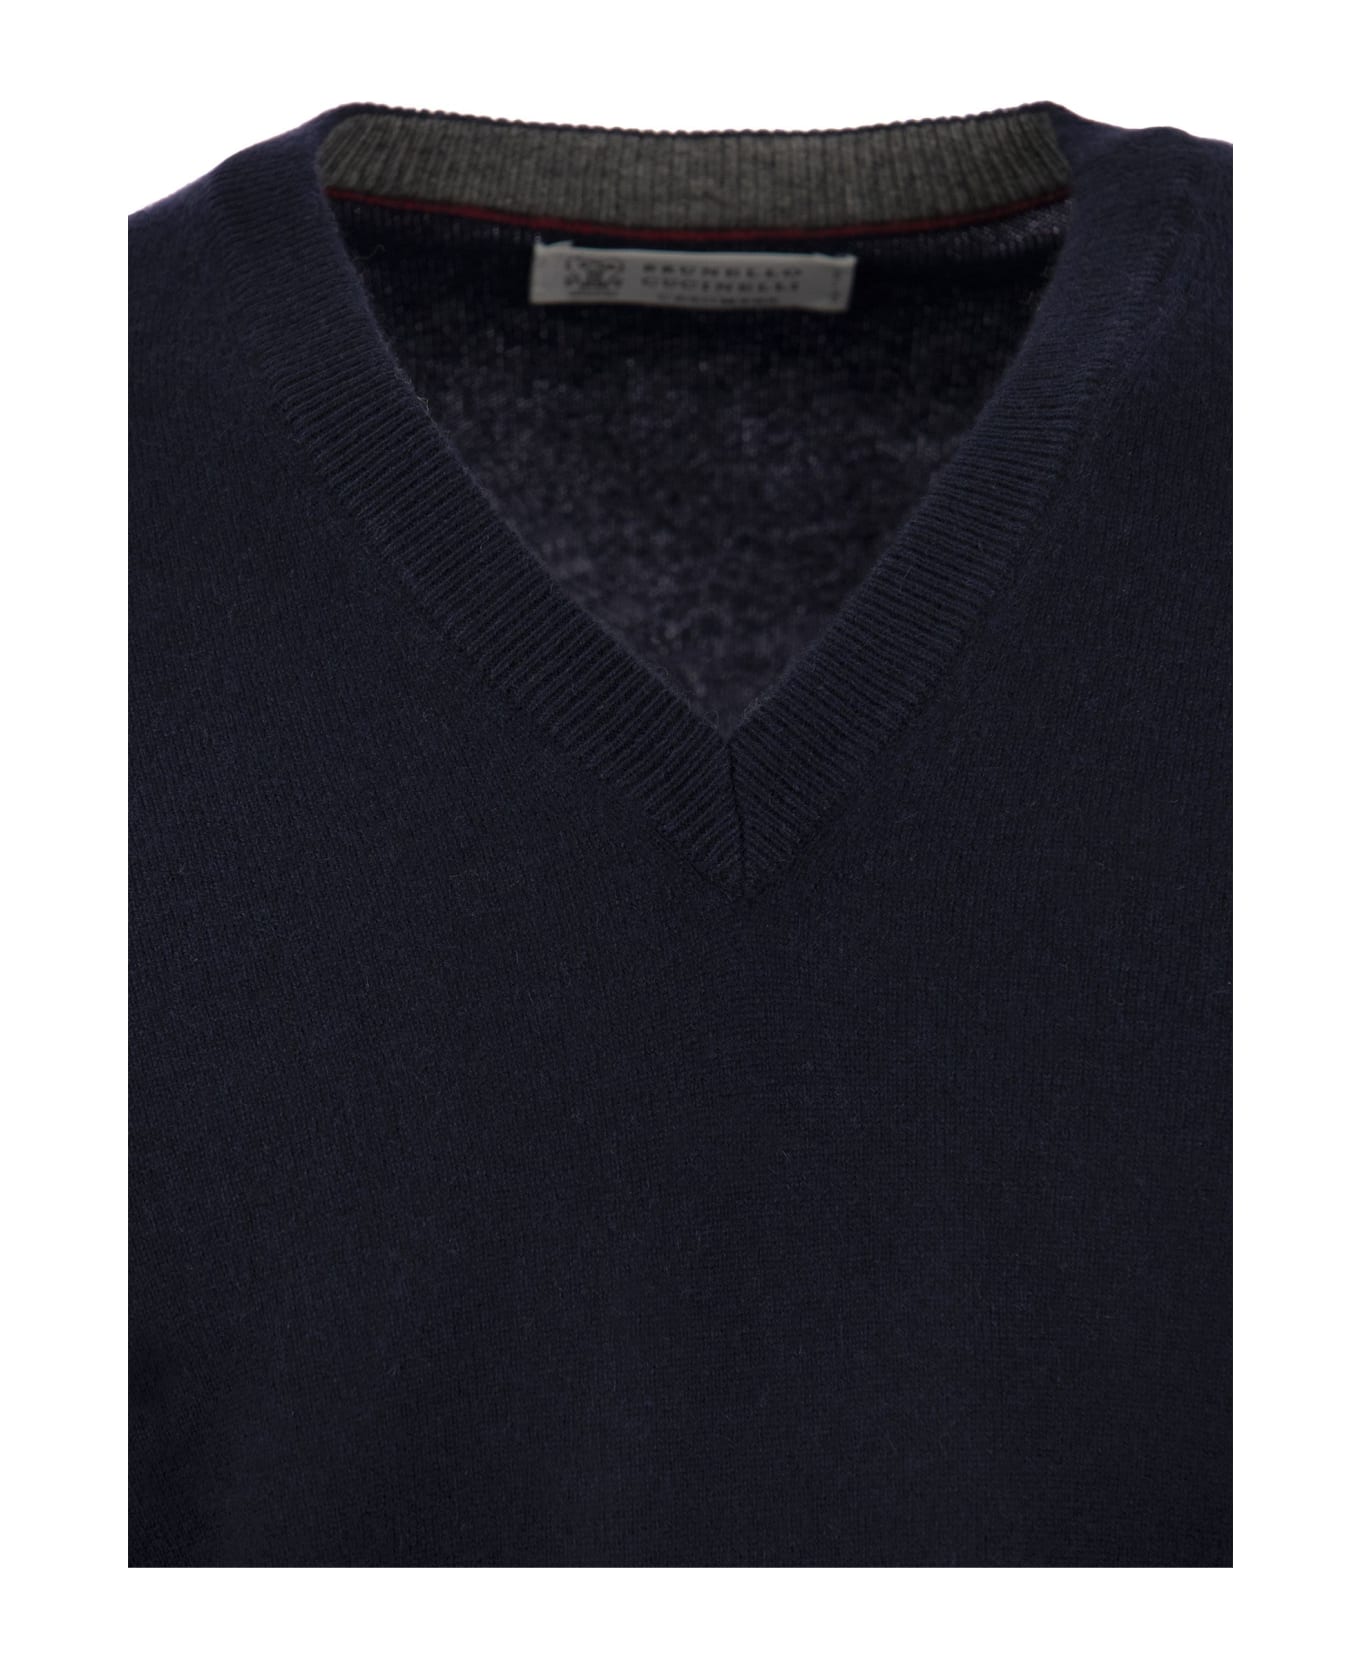 Brunello Cucinelli Cashmere Sweater - Navy Blue ニットウェア